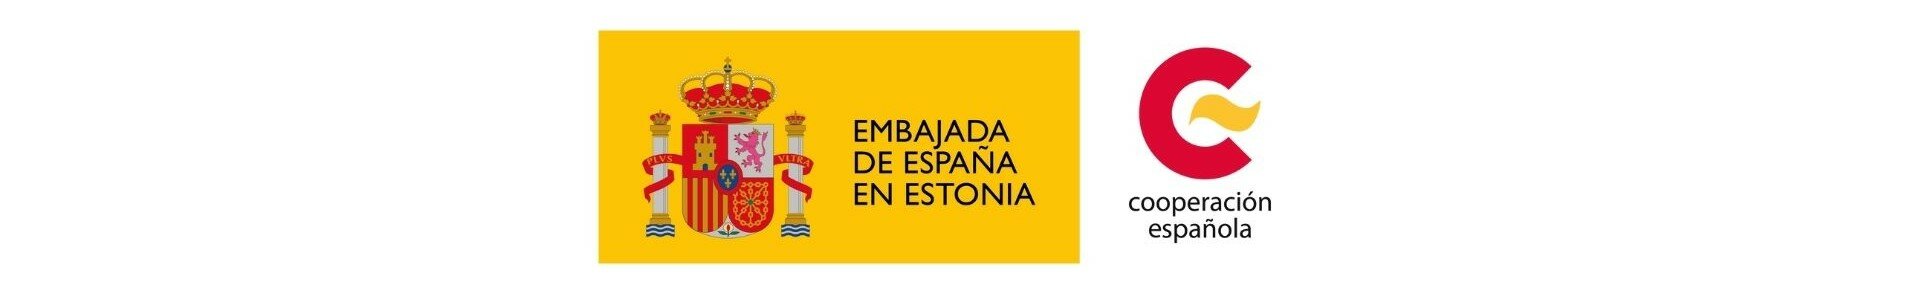 Üritust toetab Hispaania suursaatkond Eestis